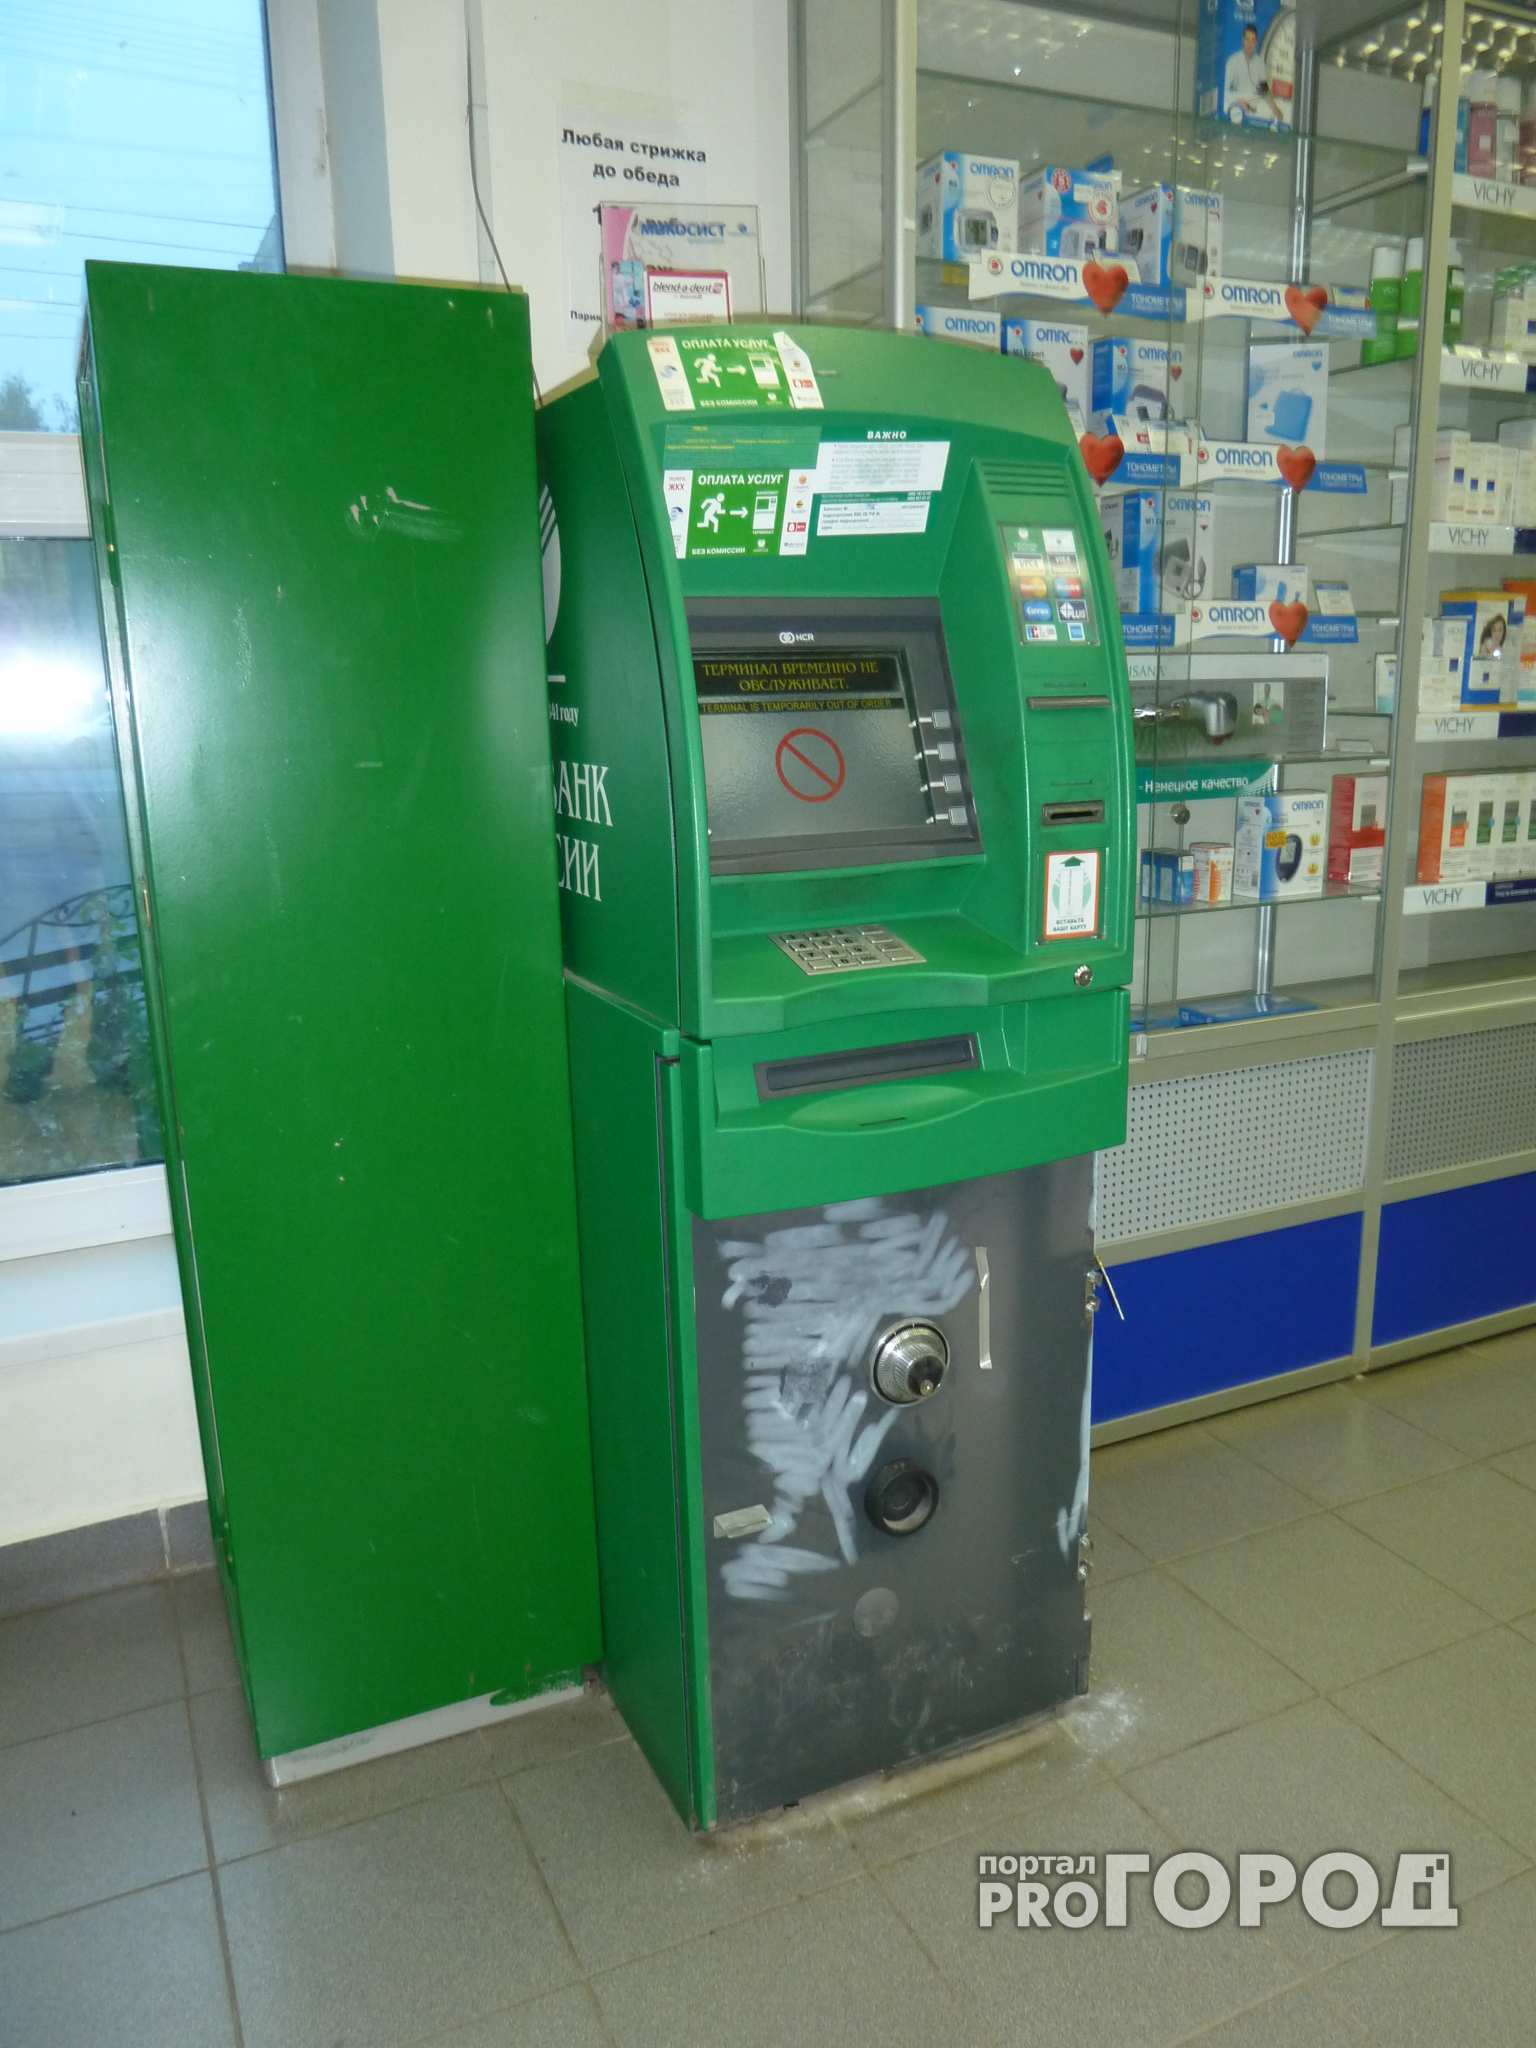 В Ярославле задержали злоумышленников, попытавшихся зимой взорвать банкомат